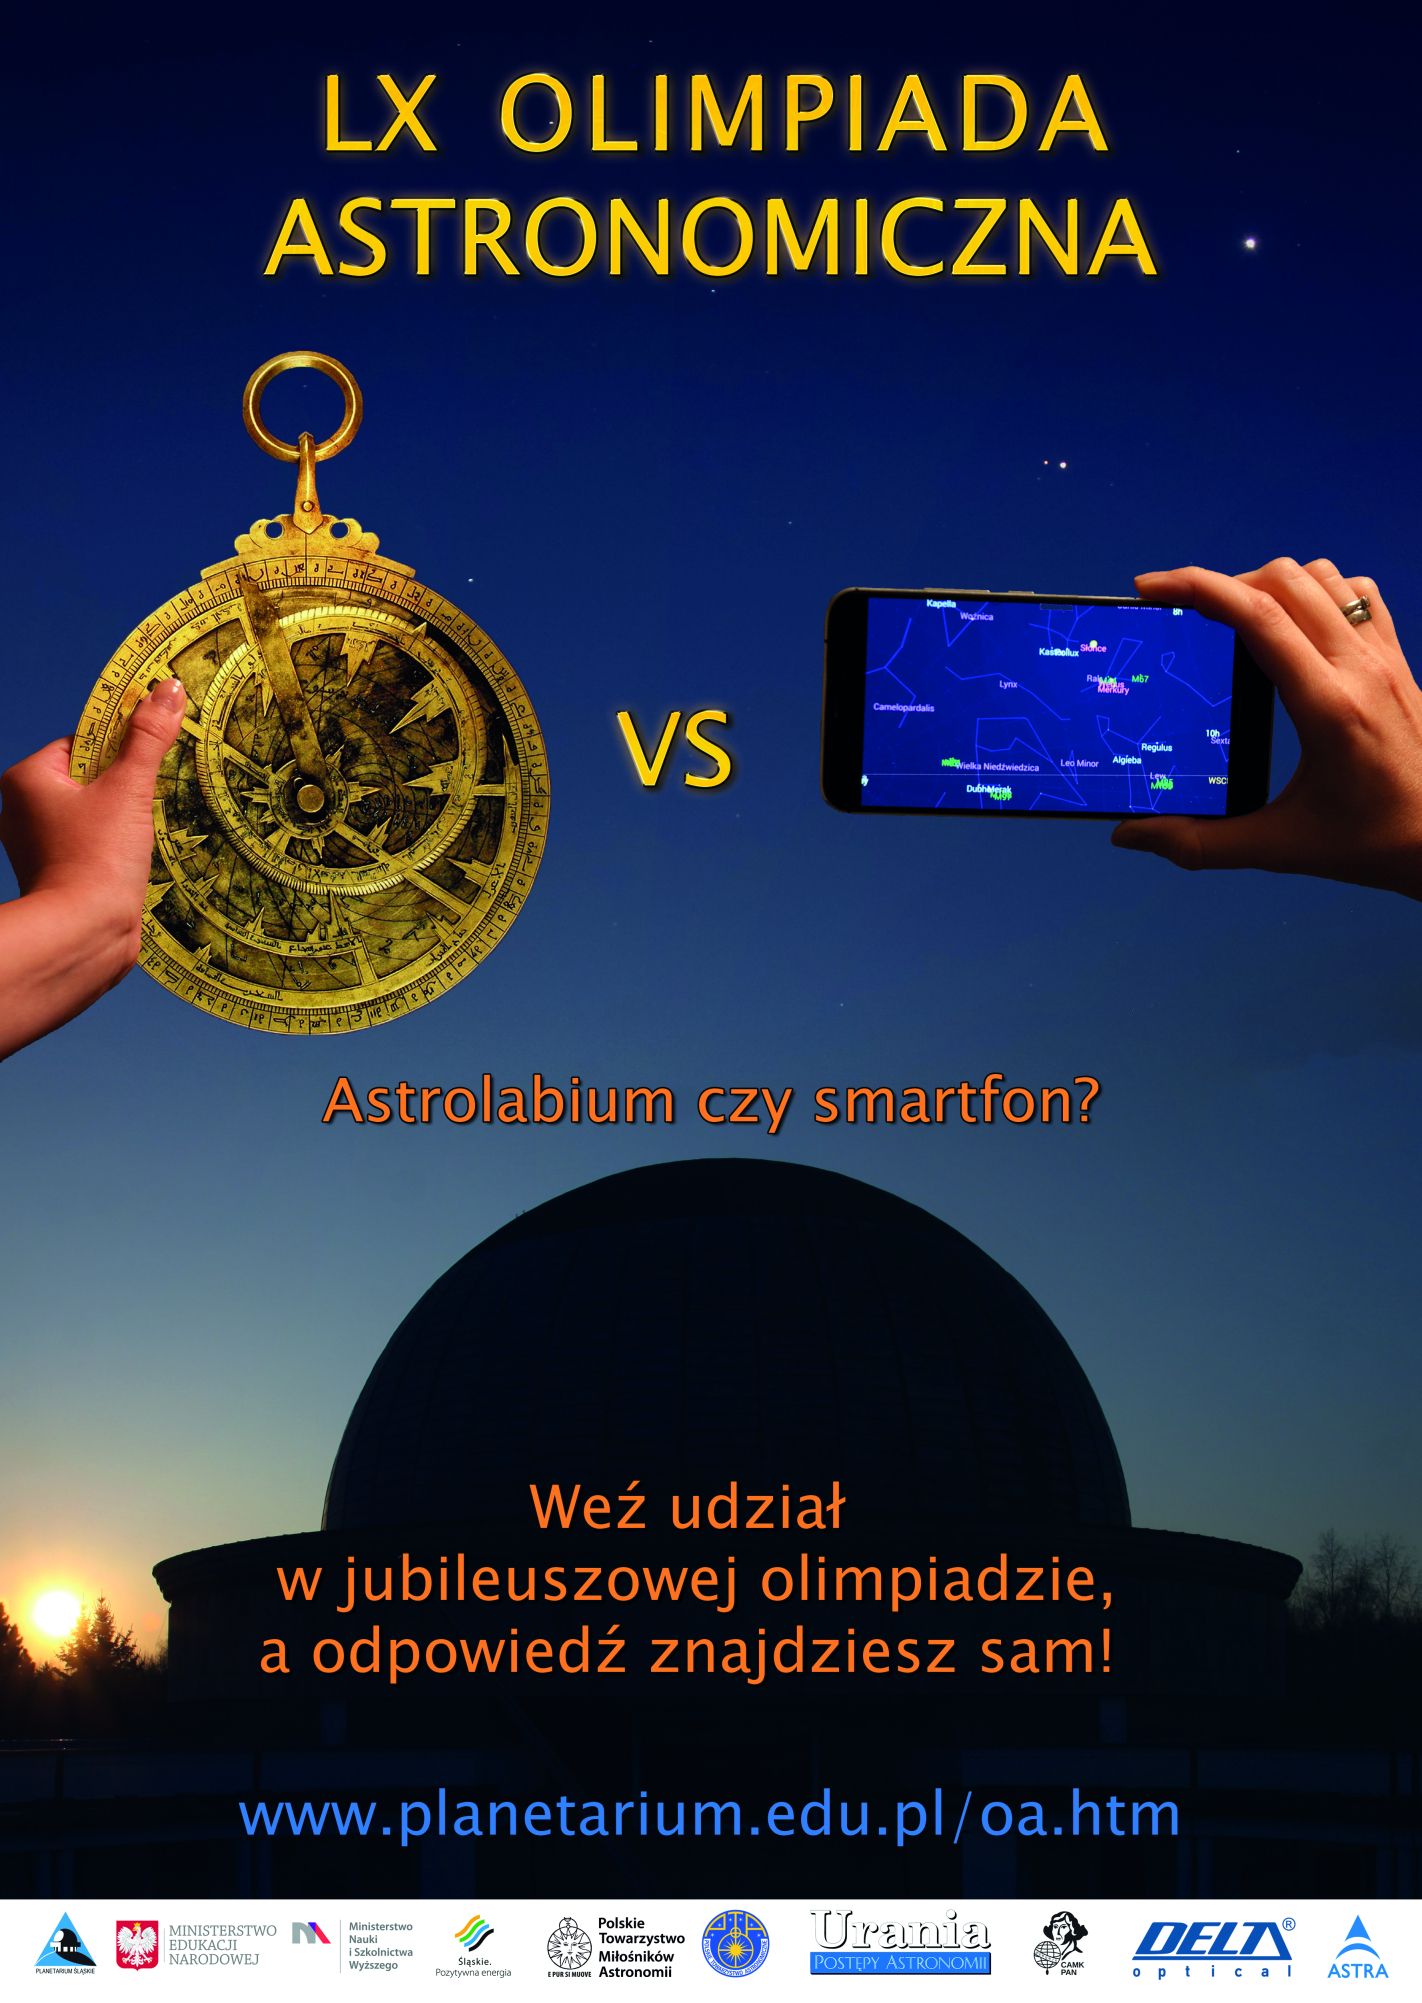 Fot. Plakat promujący LX Olimpiadę astronomiczną.